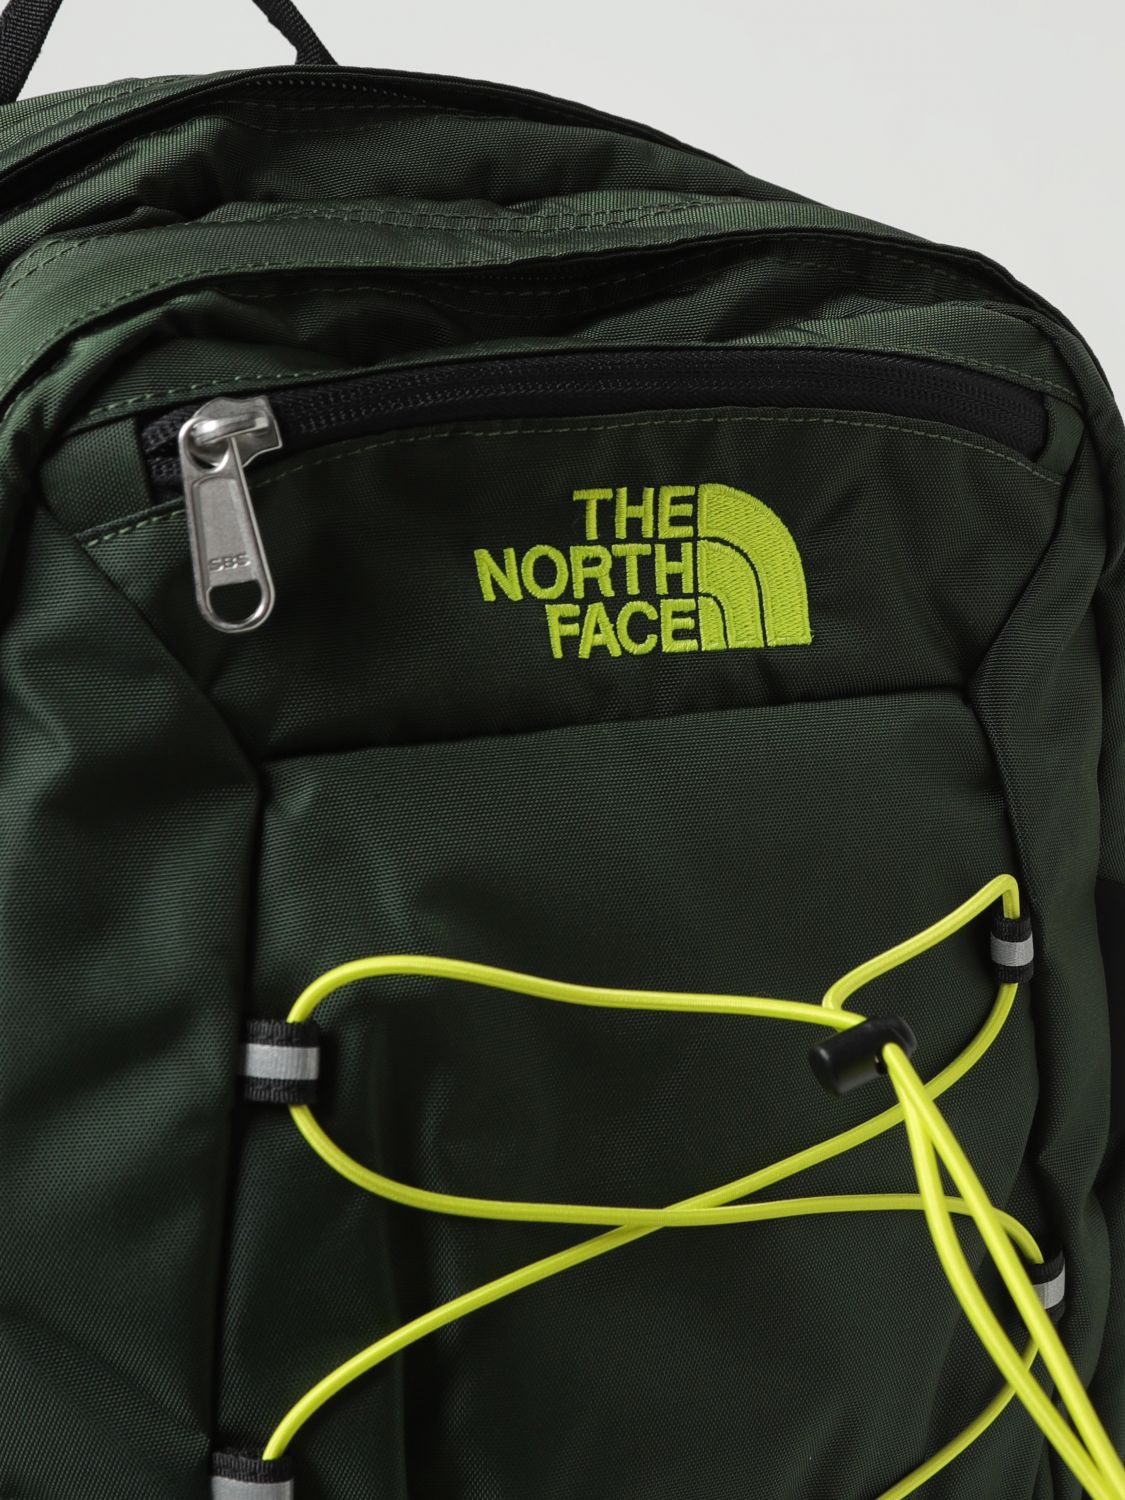 THE NORTH FACE: Sac à dos homme - Vert  Sac À Dos The North Face NF00CF9C  en ligne sur